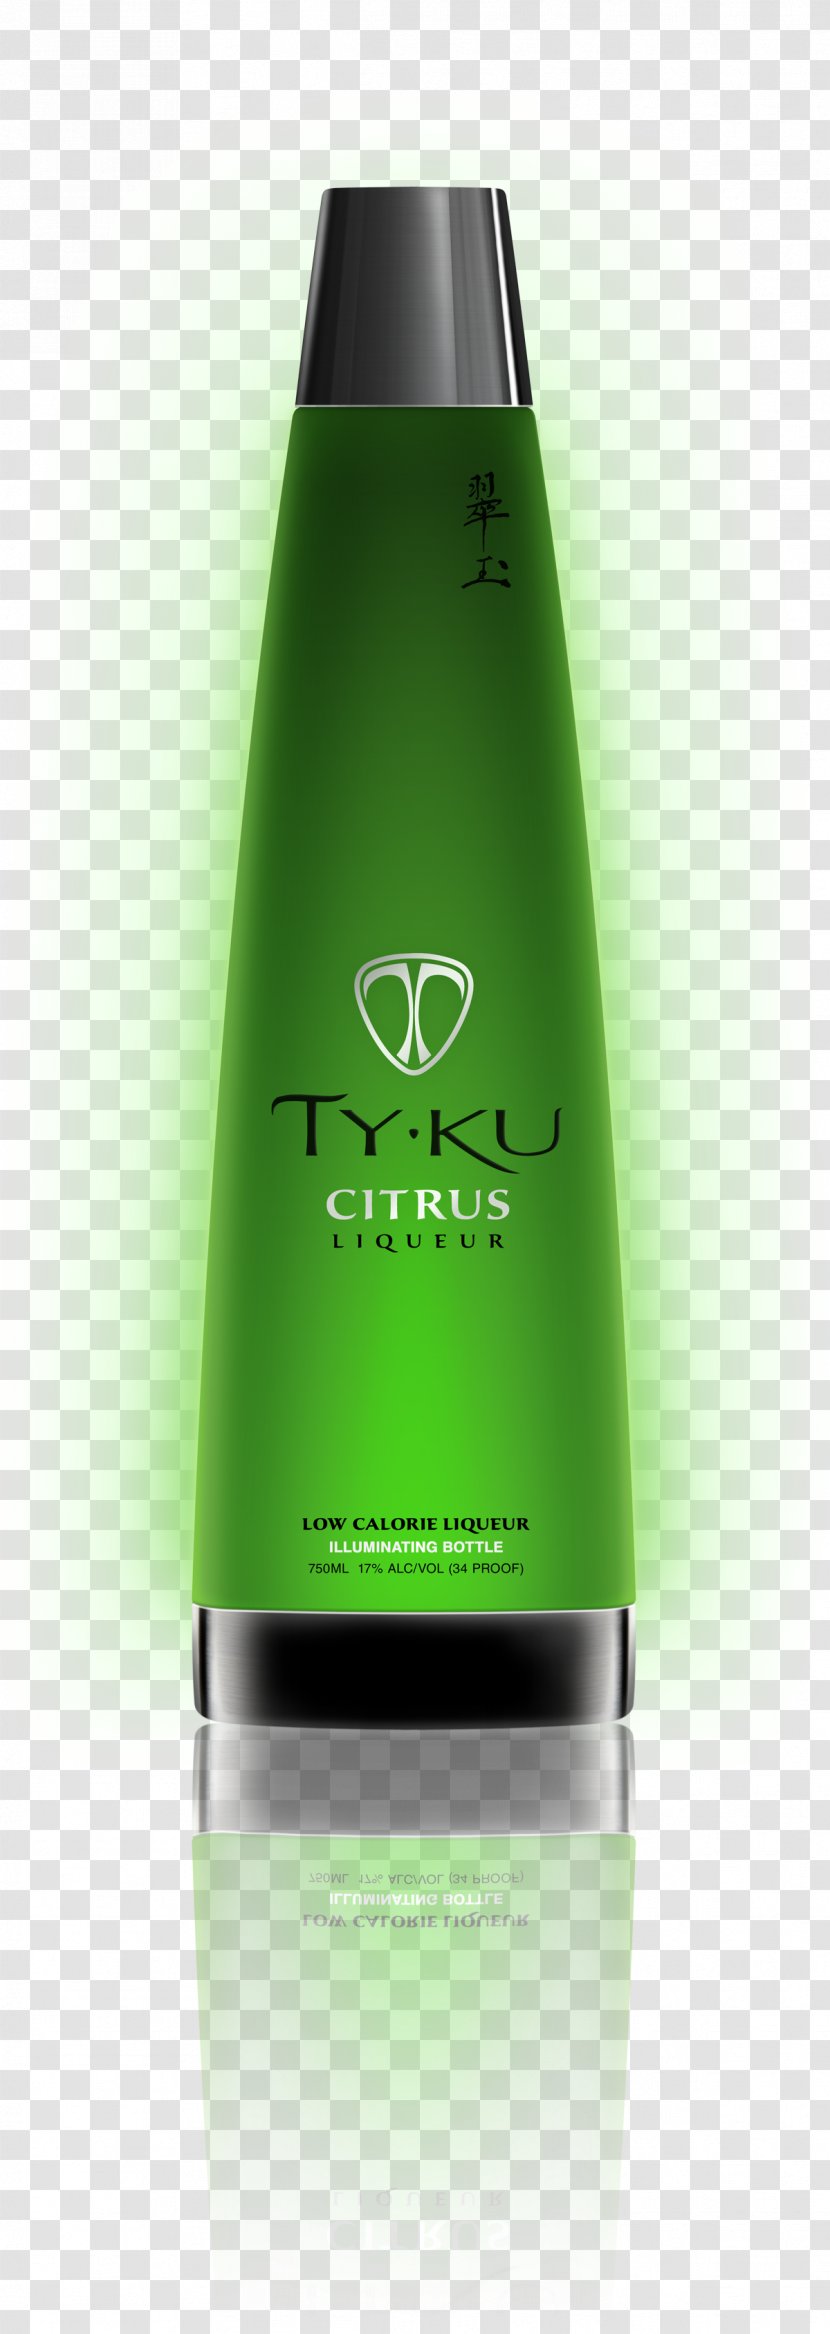 Liqueur Sake Nigori Distilled Beverage TYKU - Citrus - Bottle Transparent PNG